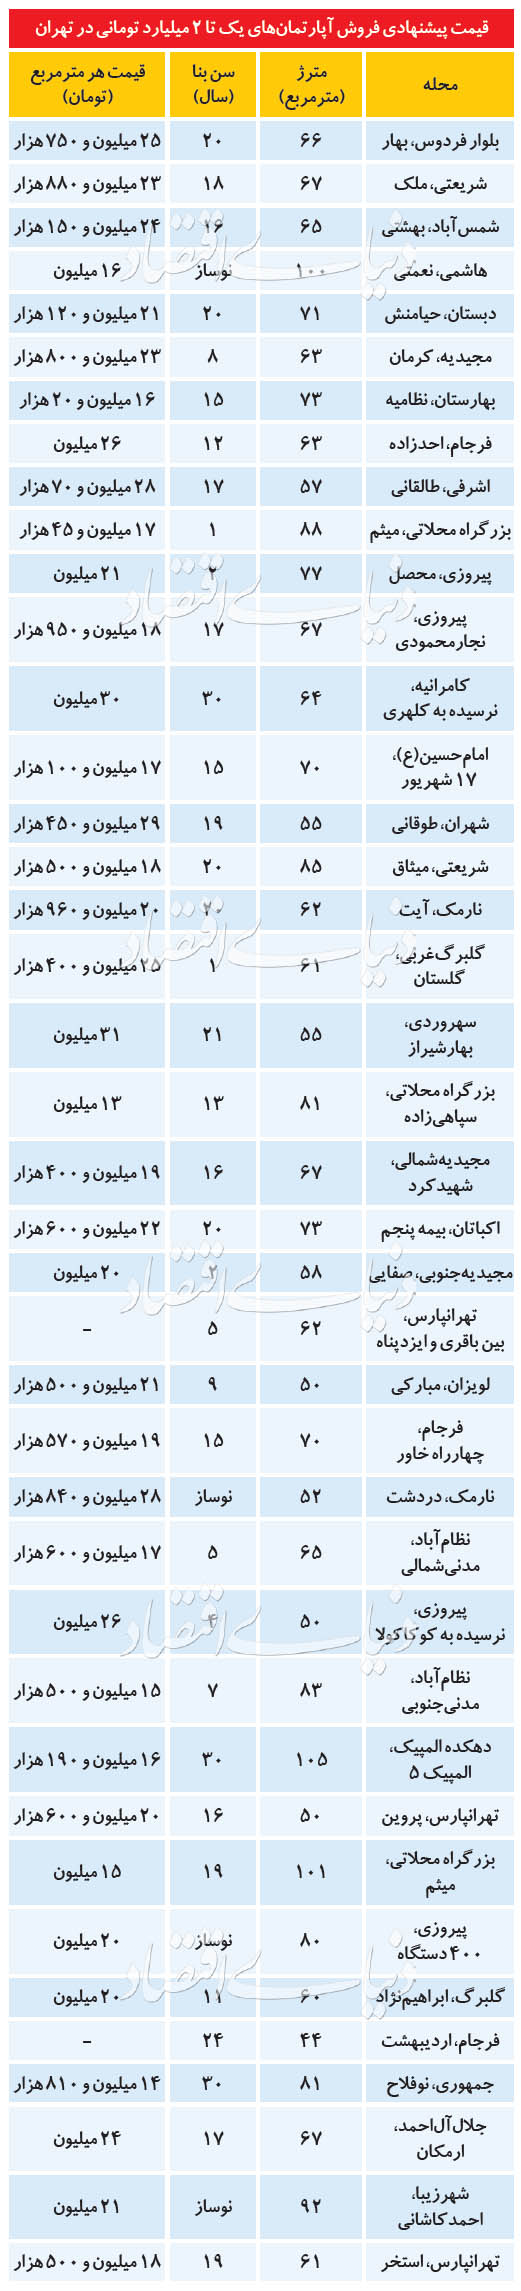 قیمت خرید خانه و نرخ اجاره مسکن در تهران امروز یکشنبه 26 خرداد ۹۹